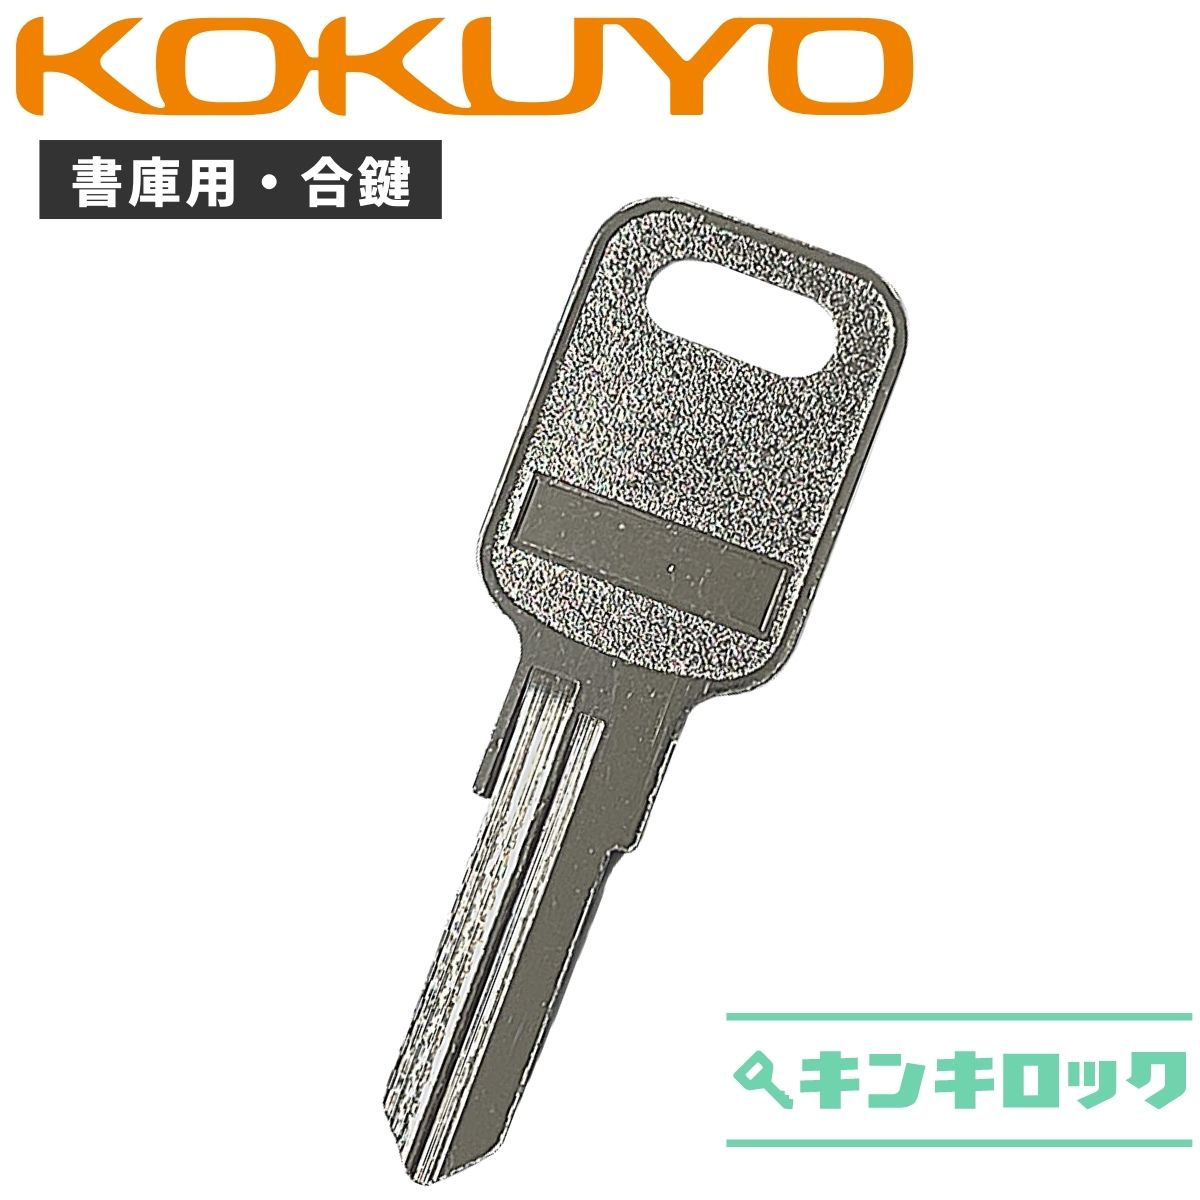 楽天市場】コクヨ KOKUYO 鍵 机 デスク ワゴン 合鍵 合カギ カギ 